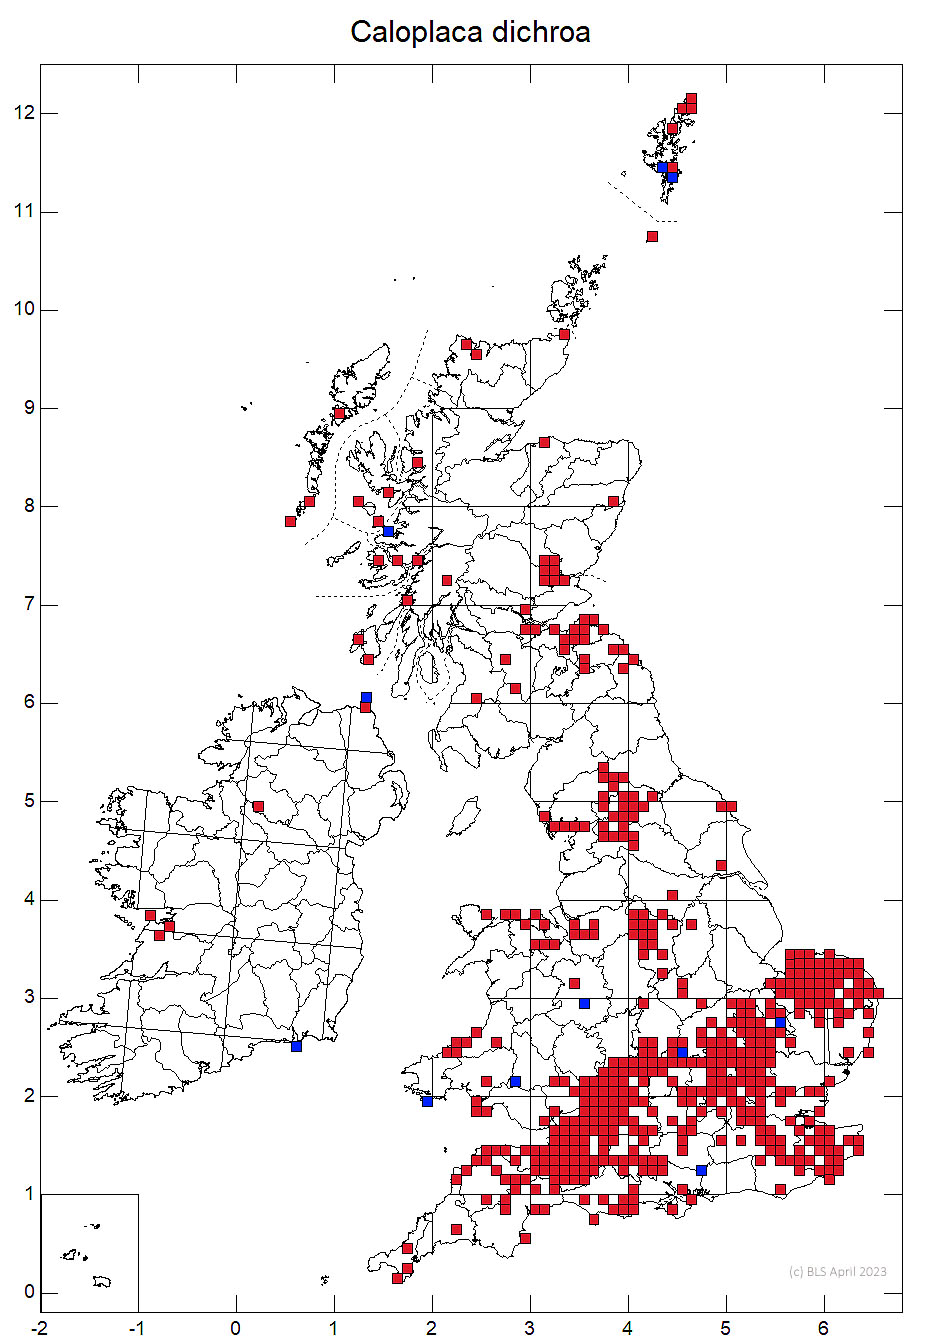 Caloplaca dichroa 10km sq distribution map